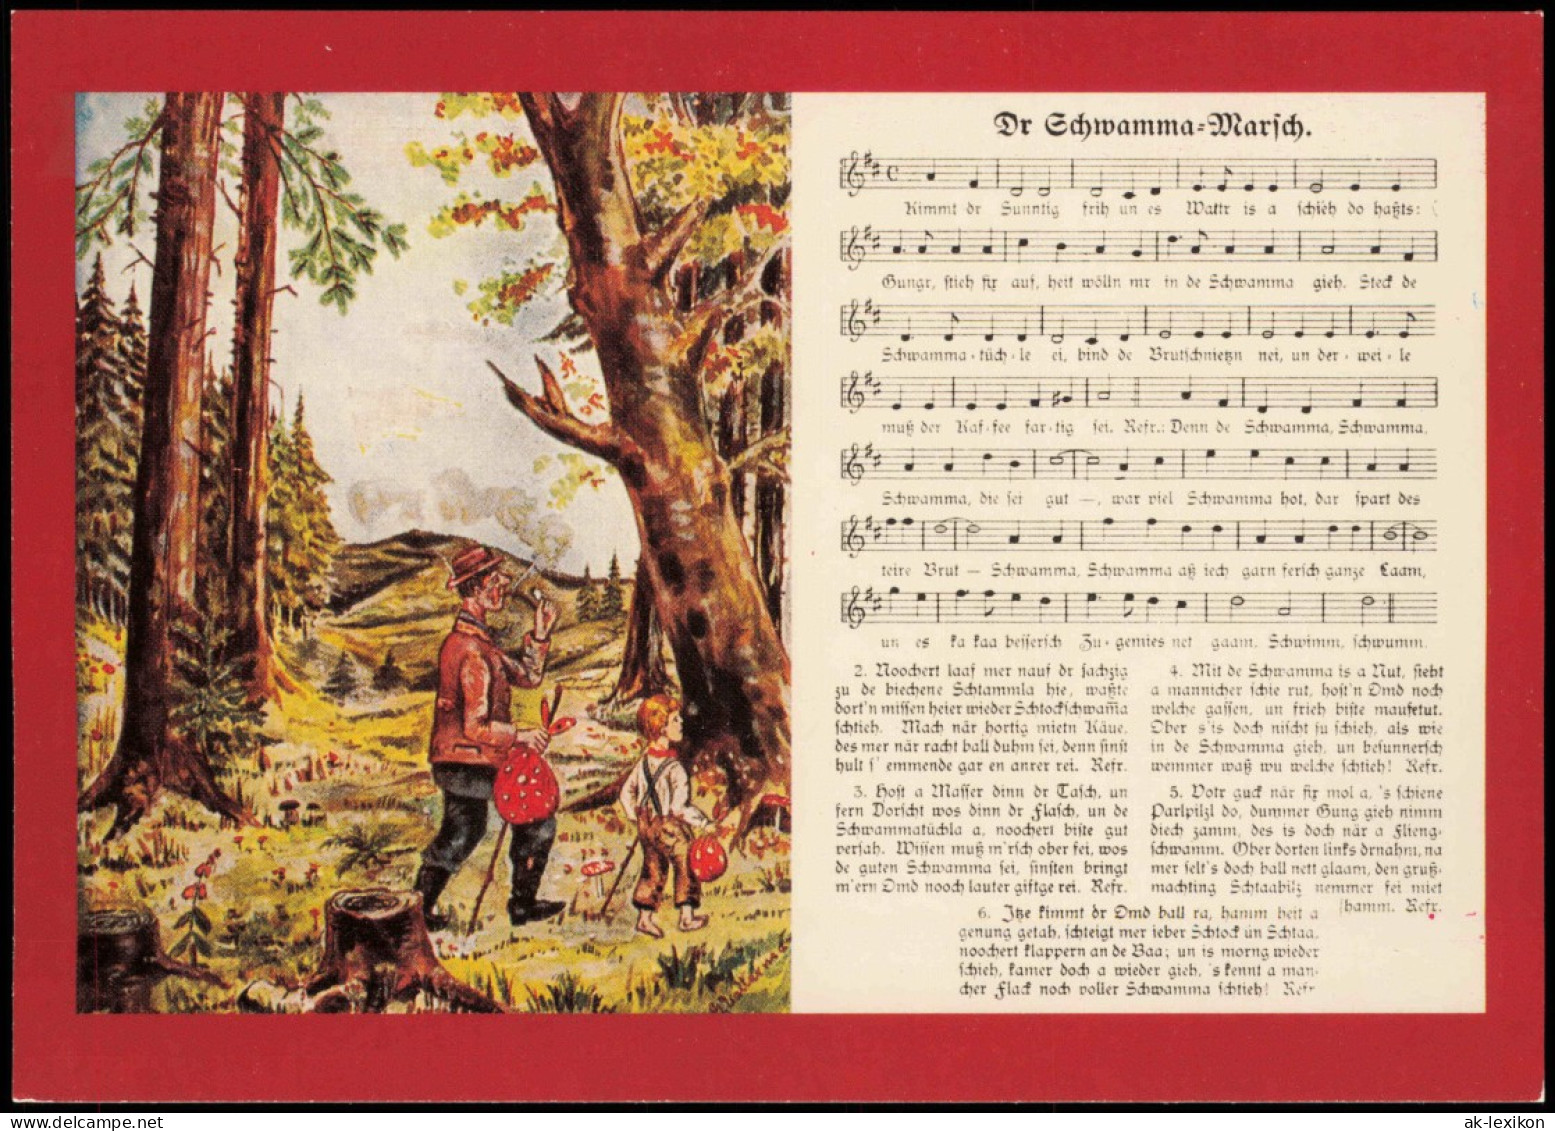 15 Historische Liedpostkarten aus dem Erzgebirge und Vogtland
DDR 1989